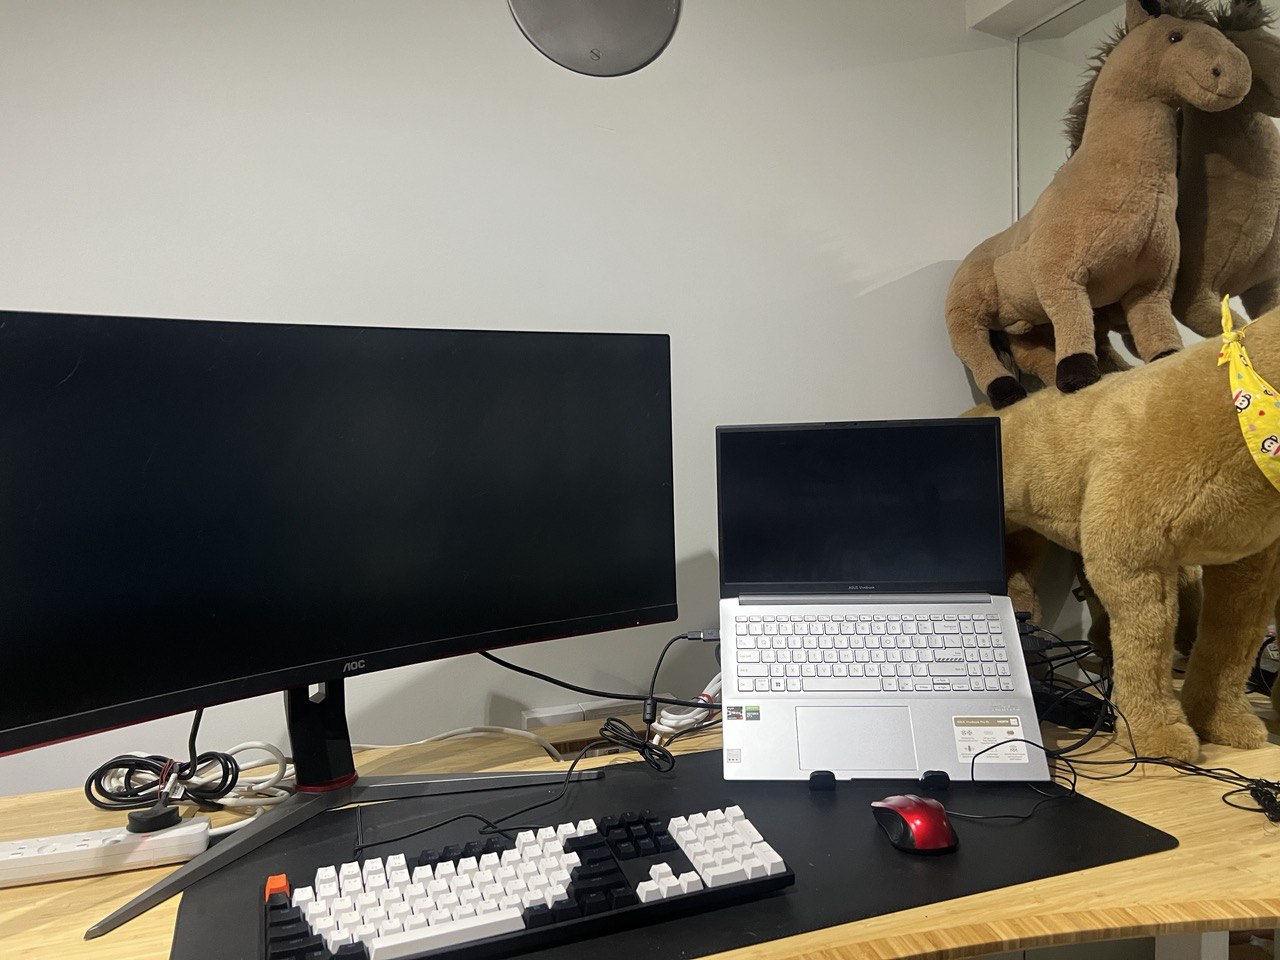 Full keyboard setup on my workspace